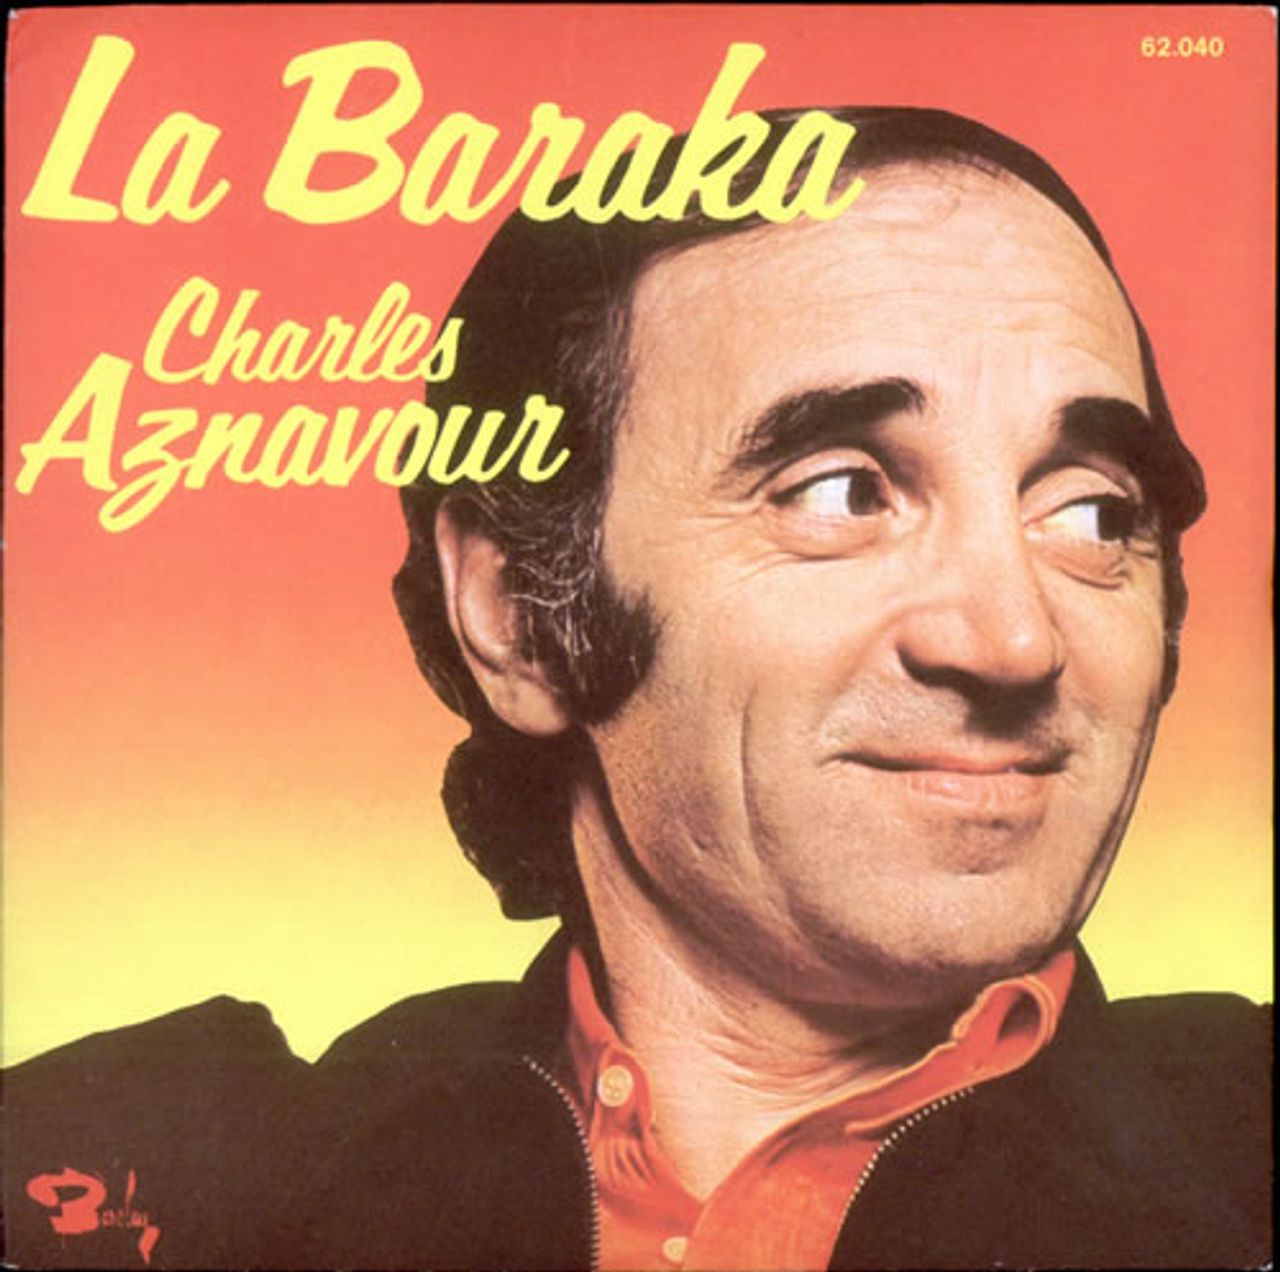 Charles Aznavour La Baraka French 7" vinyl single (7 inch record / 45) 62.040